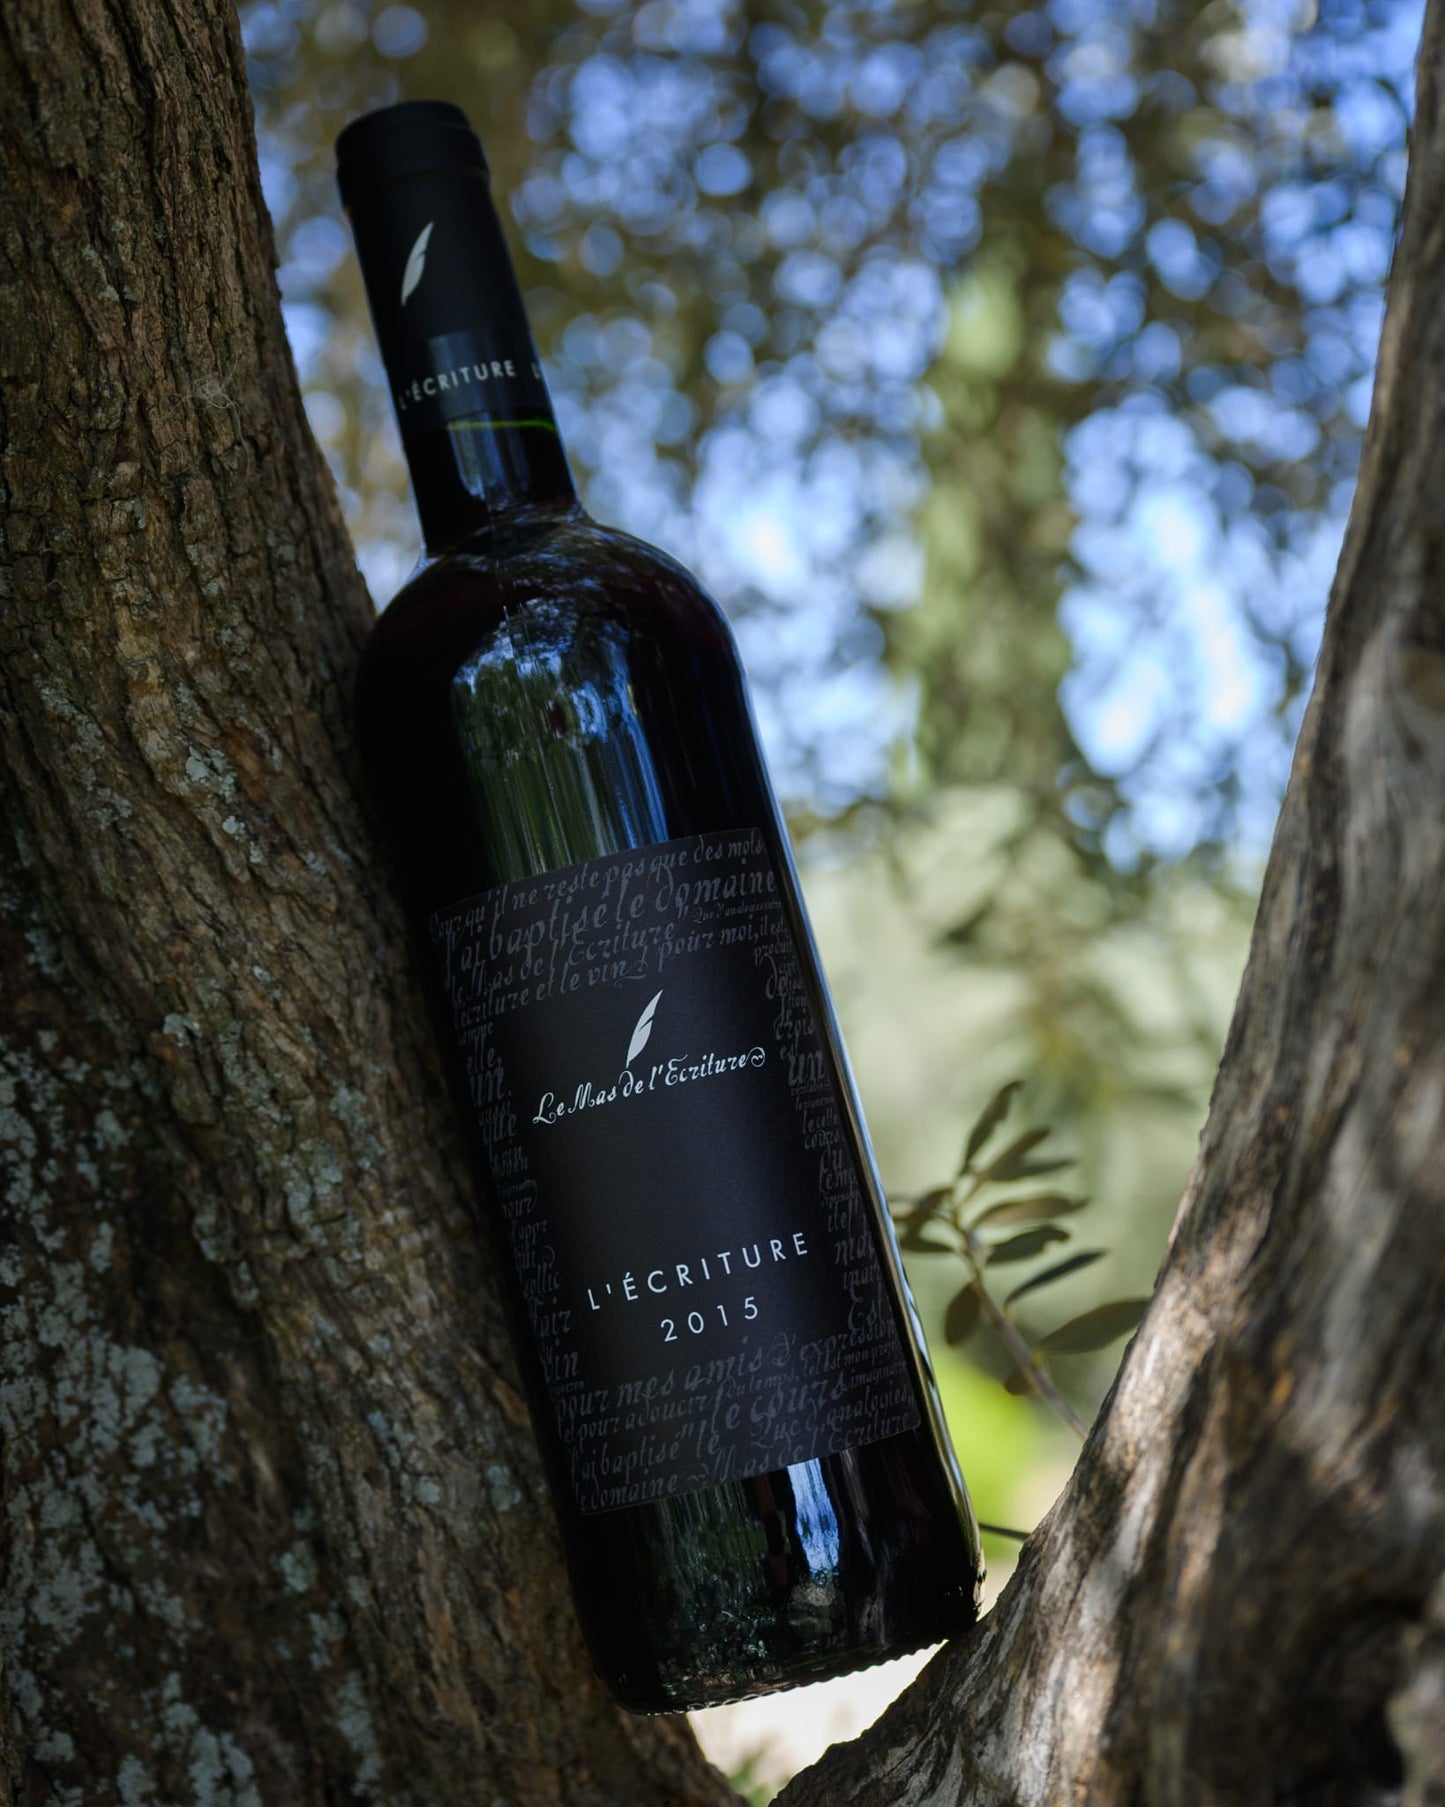 Bouteille de 'Écriture rouge 2015' du Mas de l'Écriture, posée dans un arbre avec le soleil filtrant à travers les feuilles. L'image évoque l'élégance et la complexité de ce vin, un reflet du terroir unique des Terrasses du Larzac où il a été cultivé.